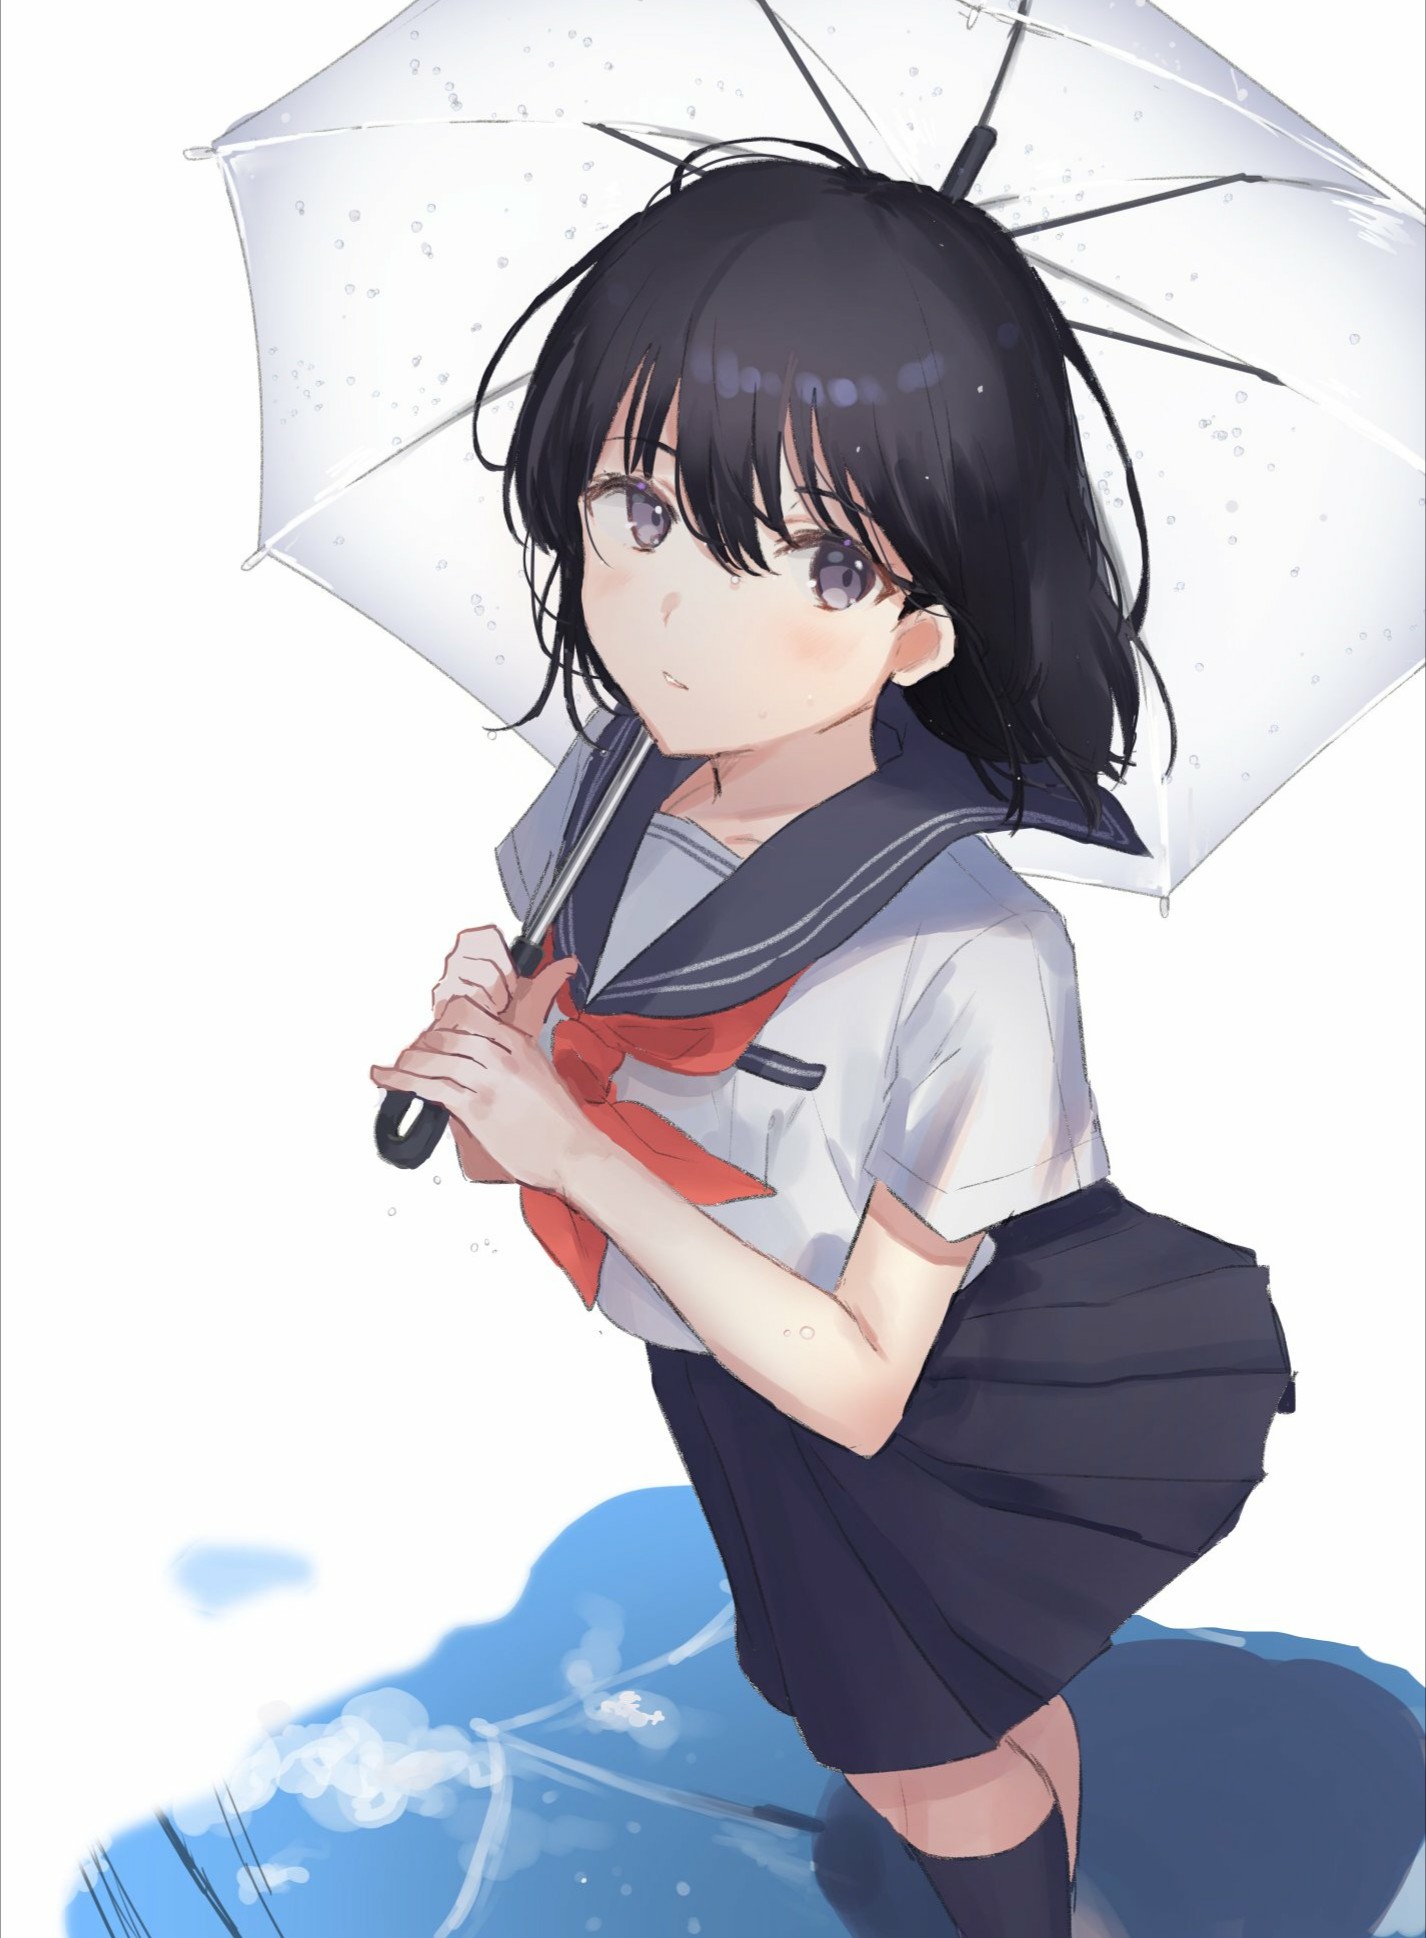 Anime Anime Girls Oyuyu Dark Hair Umbrella School Uniform 1426x1938